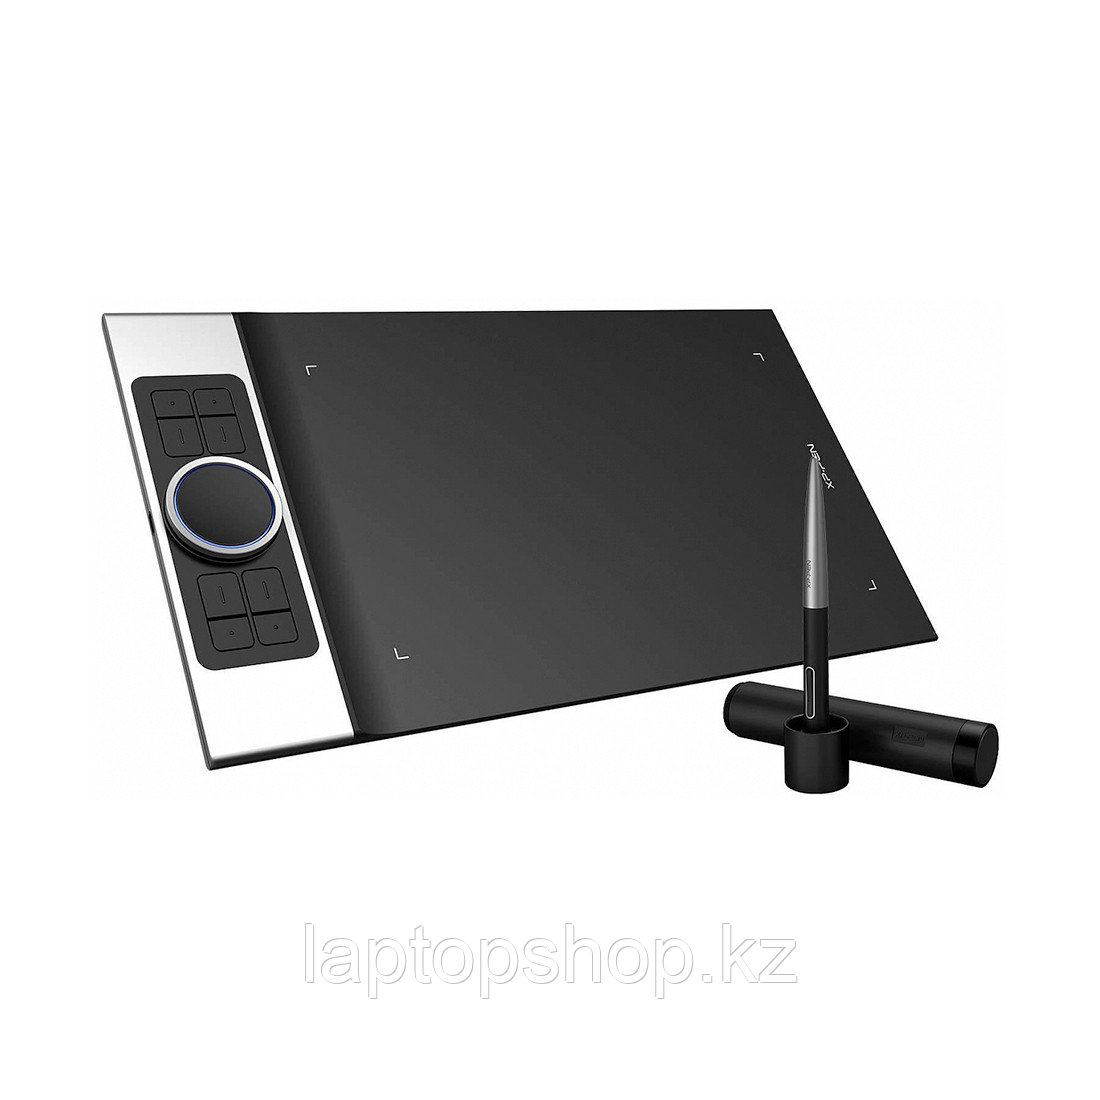 Графический планшет XP-Pen Deco Pro Medium, фото 1